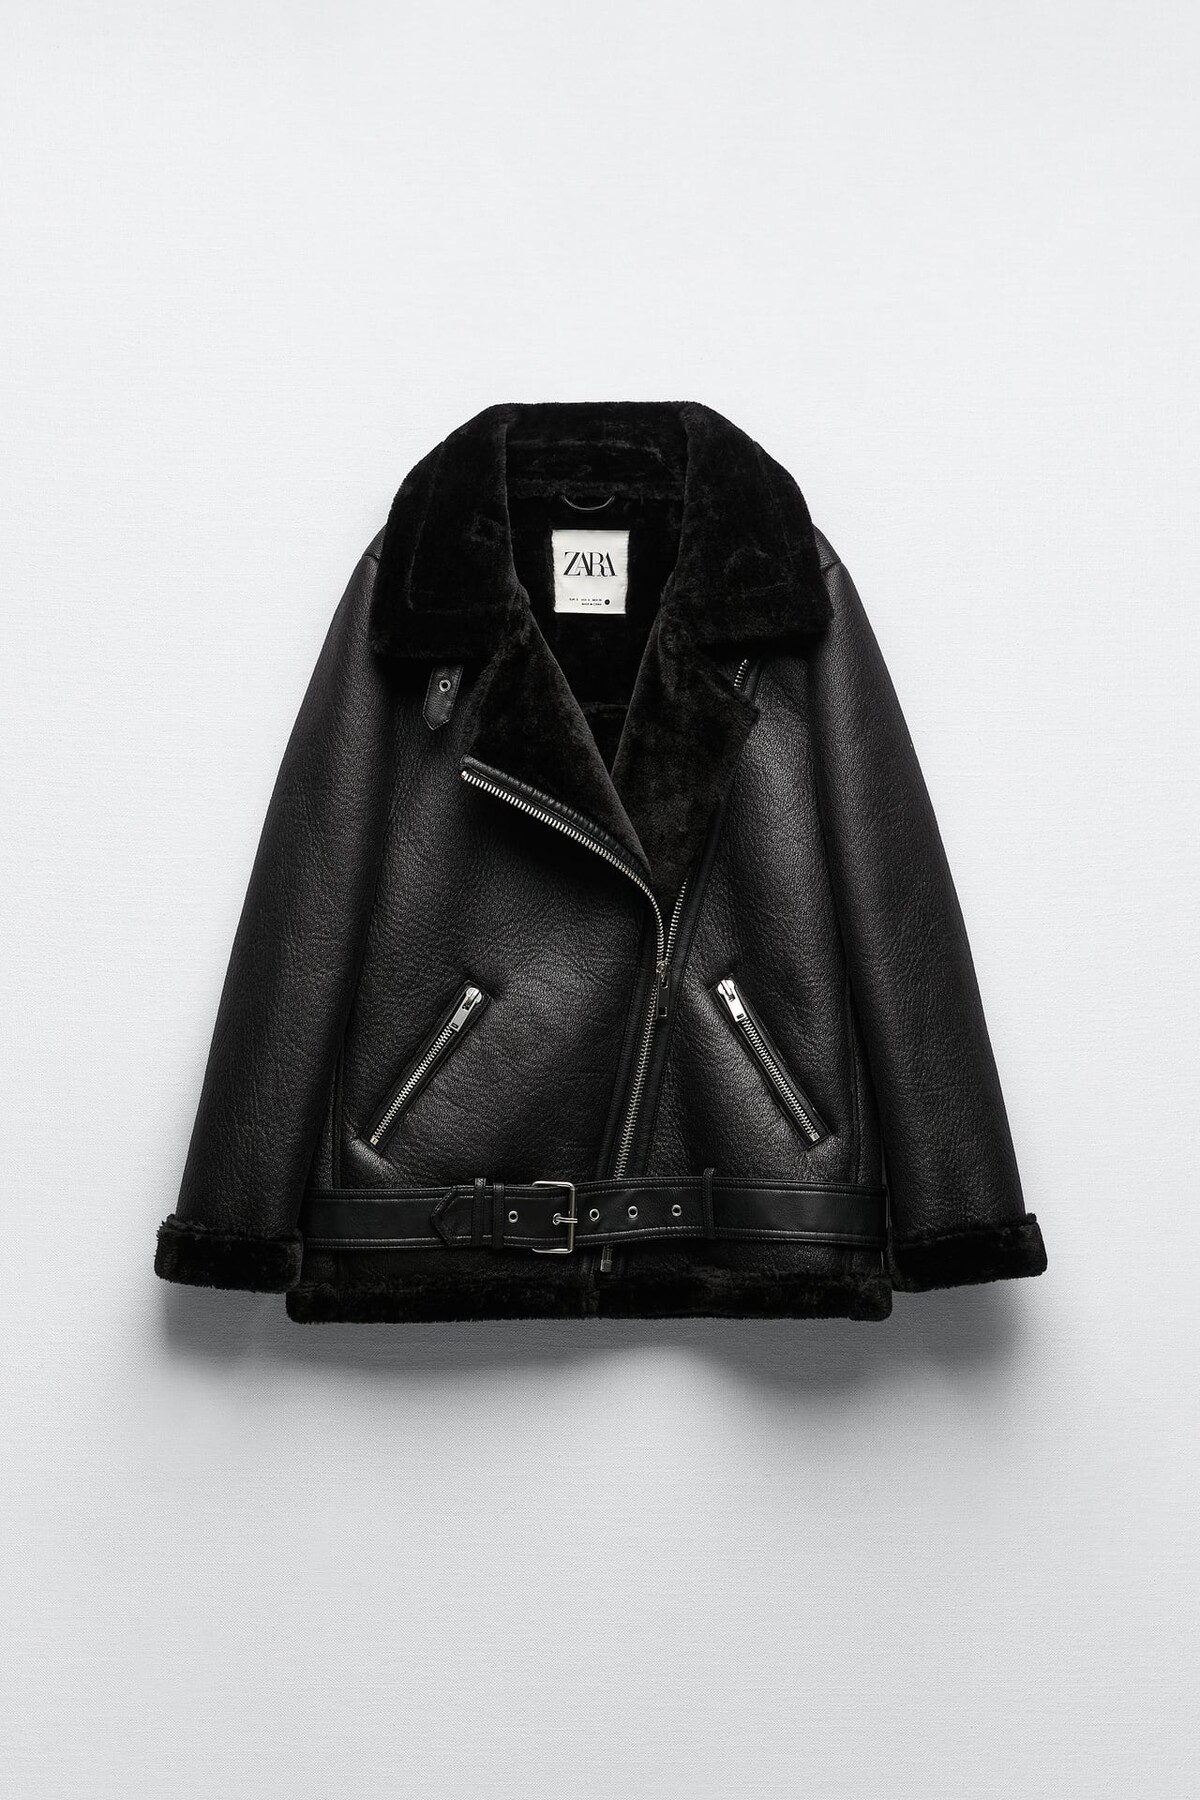 Čierna bunda značky Zara s textúrou. Výrazné podšívanie dodáva modelu elegantný nádych. Zaujímavým prvkom je pútko na opasku s kovovou prackou. Túto štýlovku si dokážeš zaobstarať za 79,95 €.


